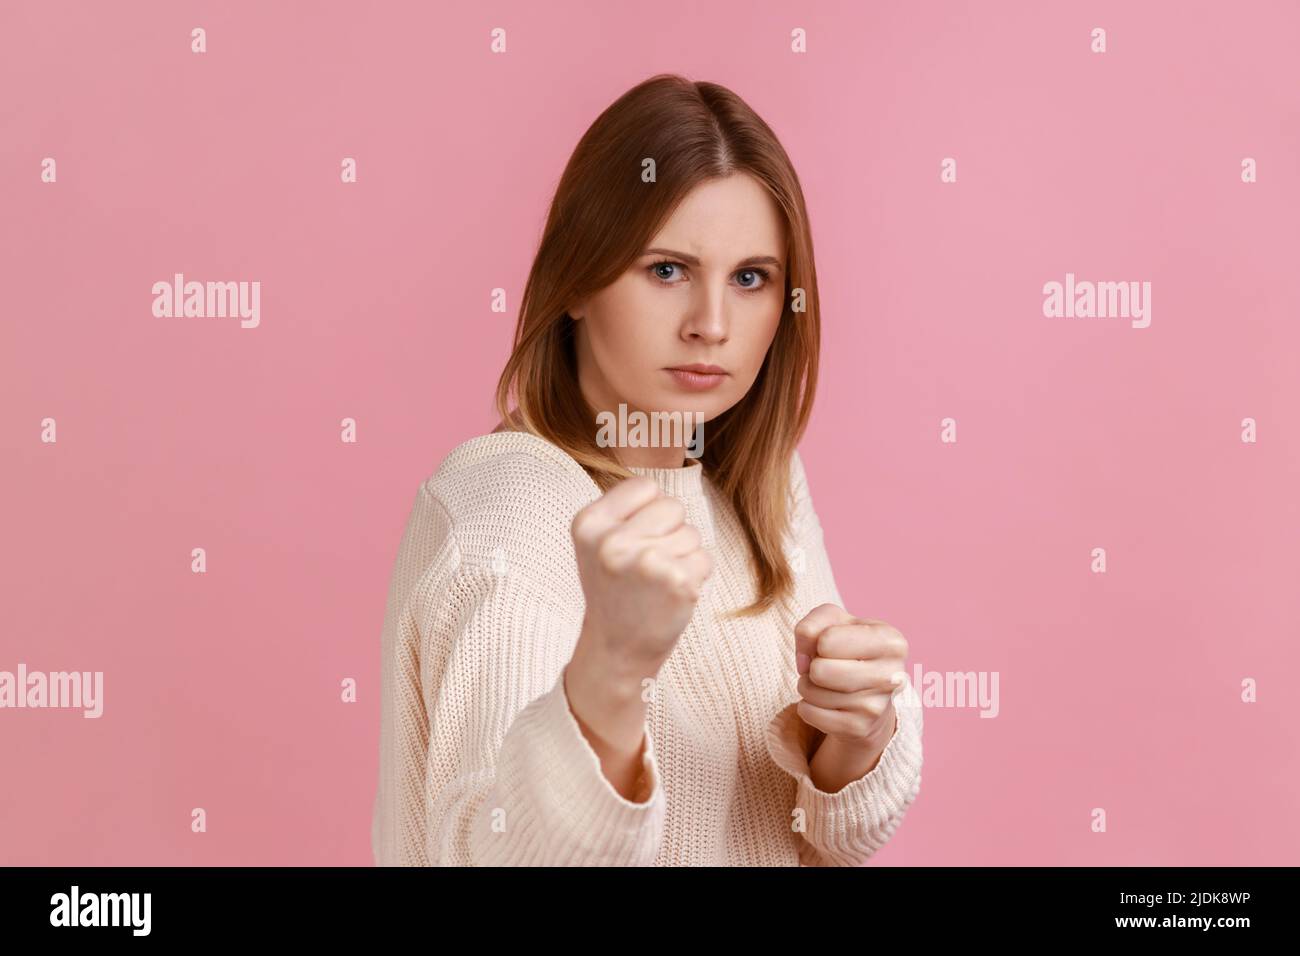 Portrait einer verärgerten selbstbewussten attraktiven blonden Frau, die Fäuste zusammenhält, Boxgesten zeigt und bereit ist, zu schlagen, mit weißem Pullover. Innenaufnahme des Studios isoliert auf rosa Hintergrund. Stockfoto